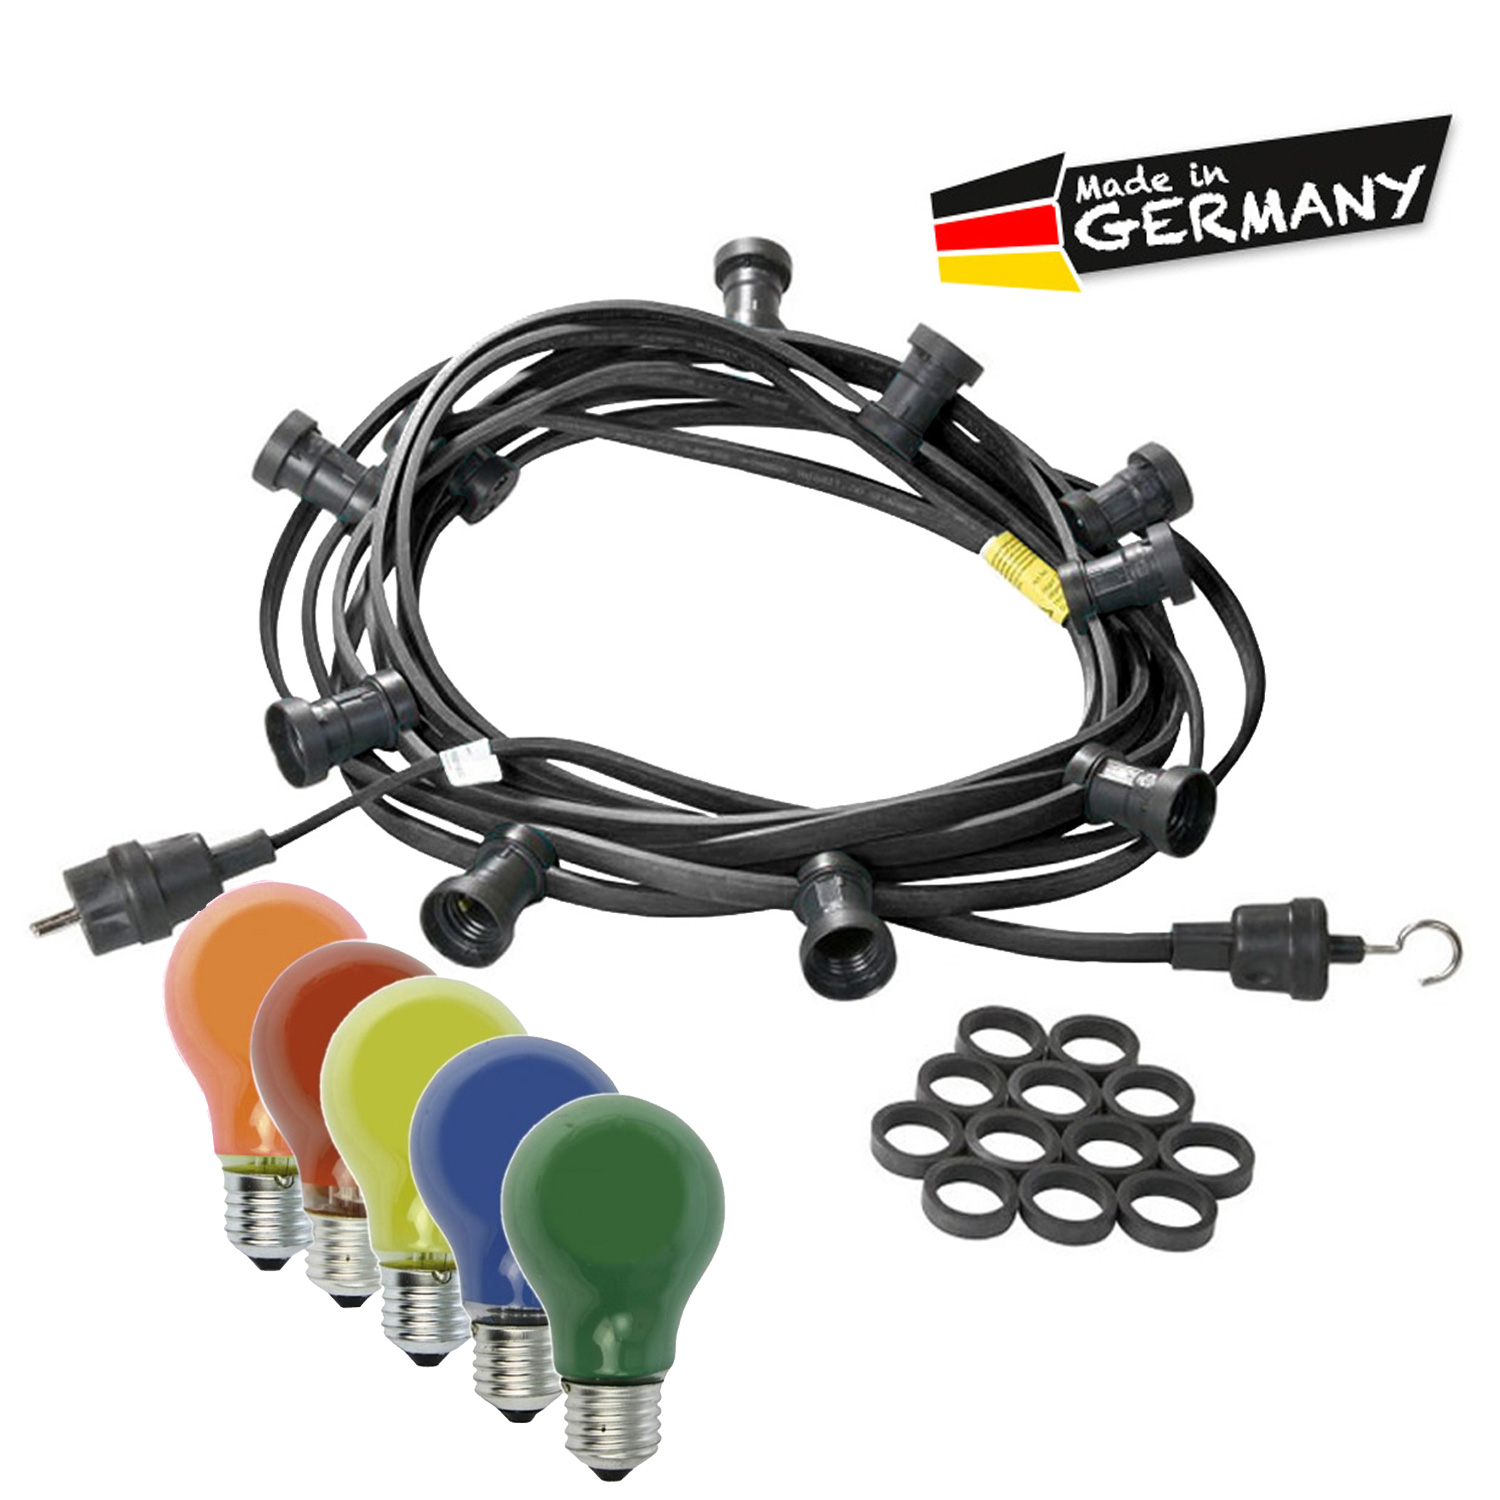 Illu-/Partylichterkette 30m - Außenlichterkette schwarz - Made in Germany - 50 bunte 25W Glühlampen